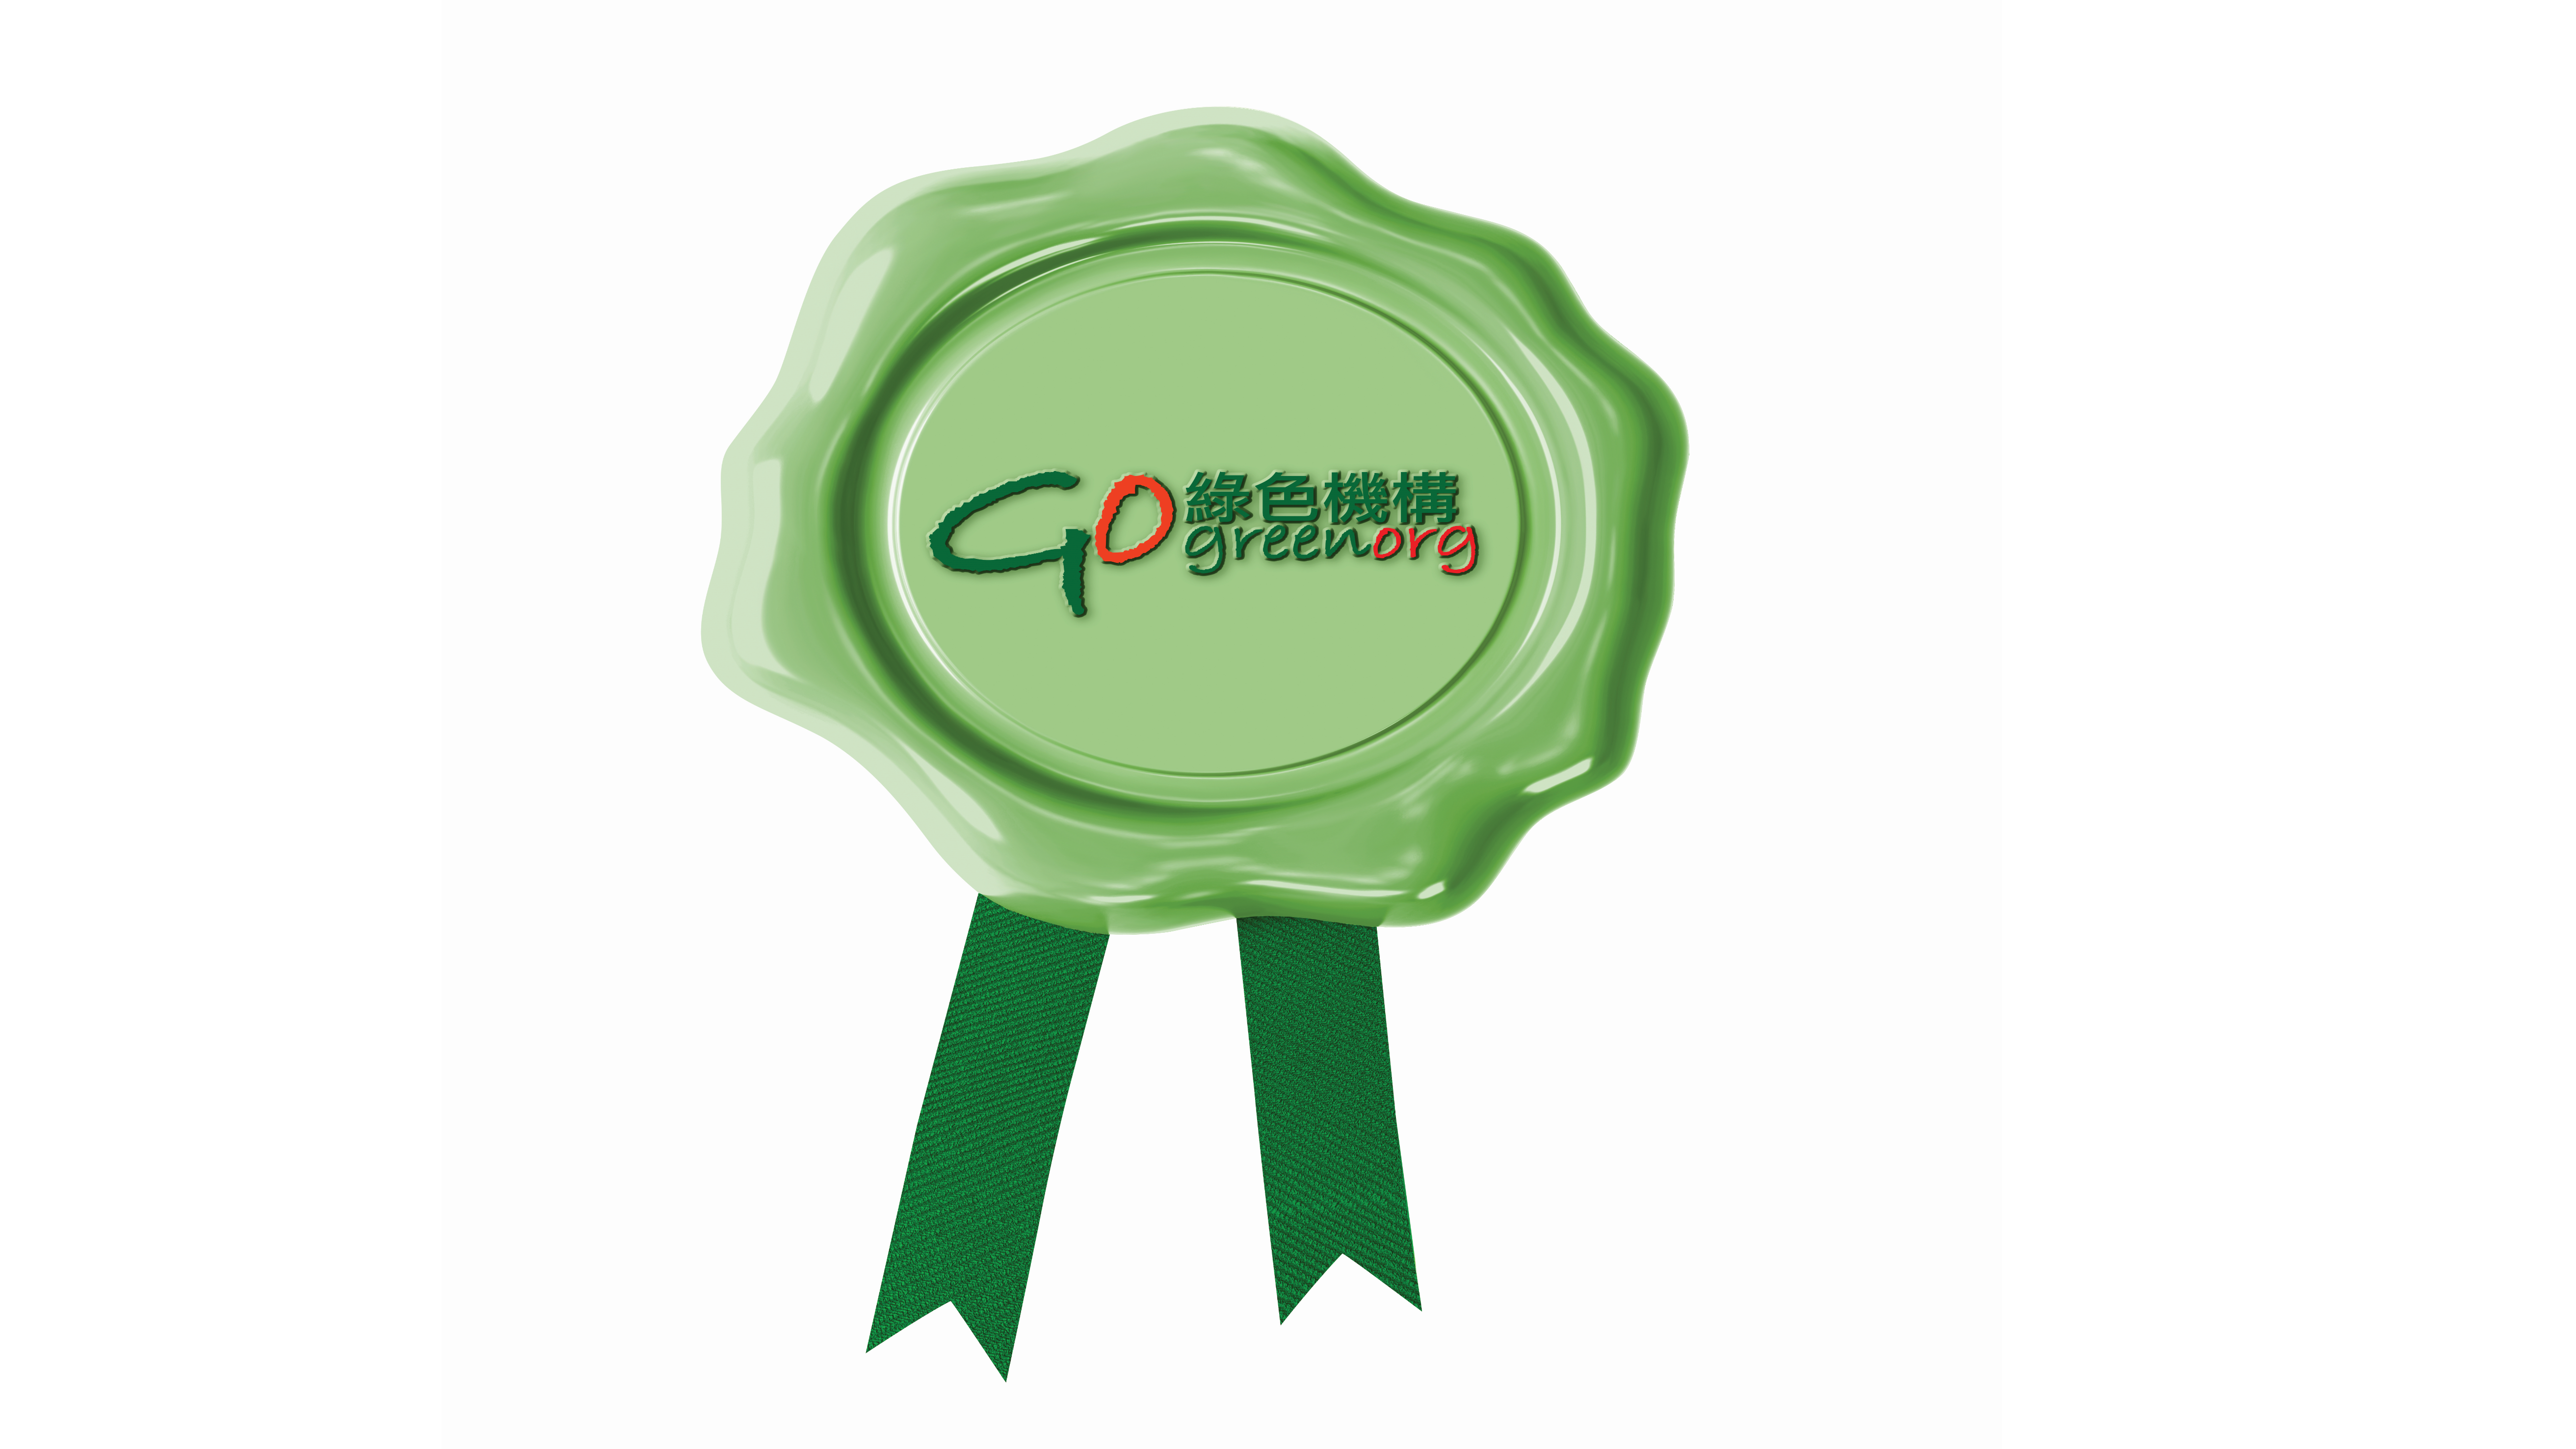 香港绿色机构认证